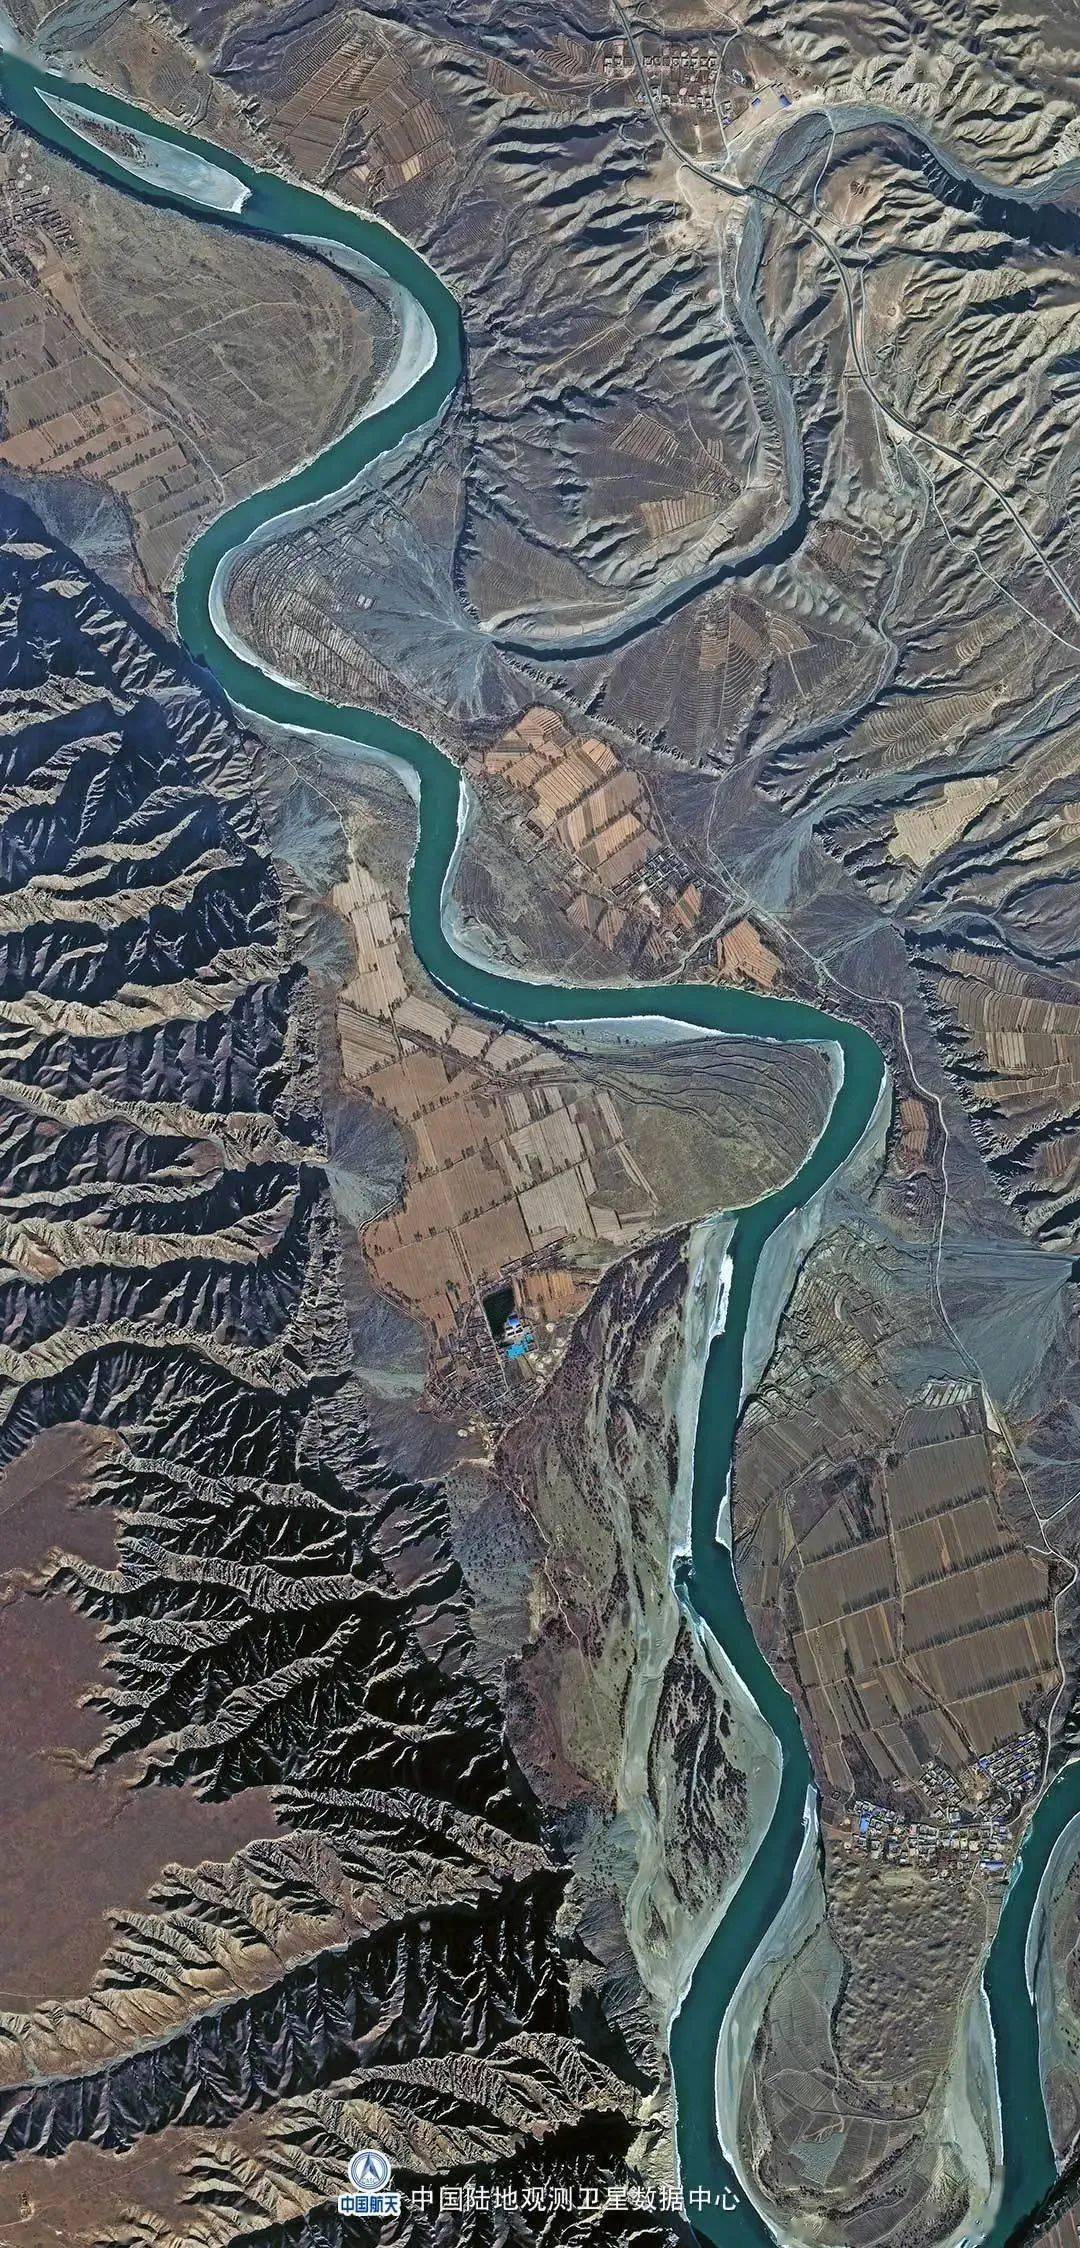 高分一号卫星拍摄于2017年7月10日罗摩桥世界很大,地球很美,以上帝